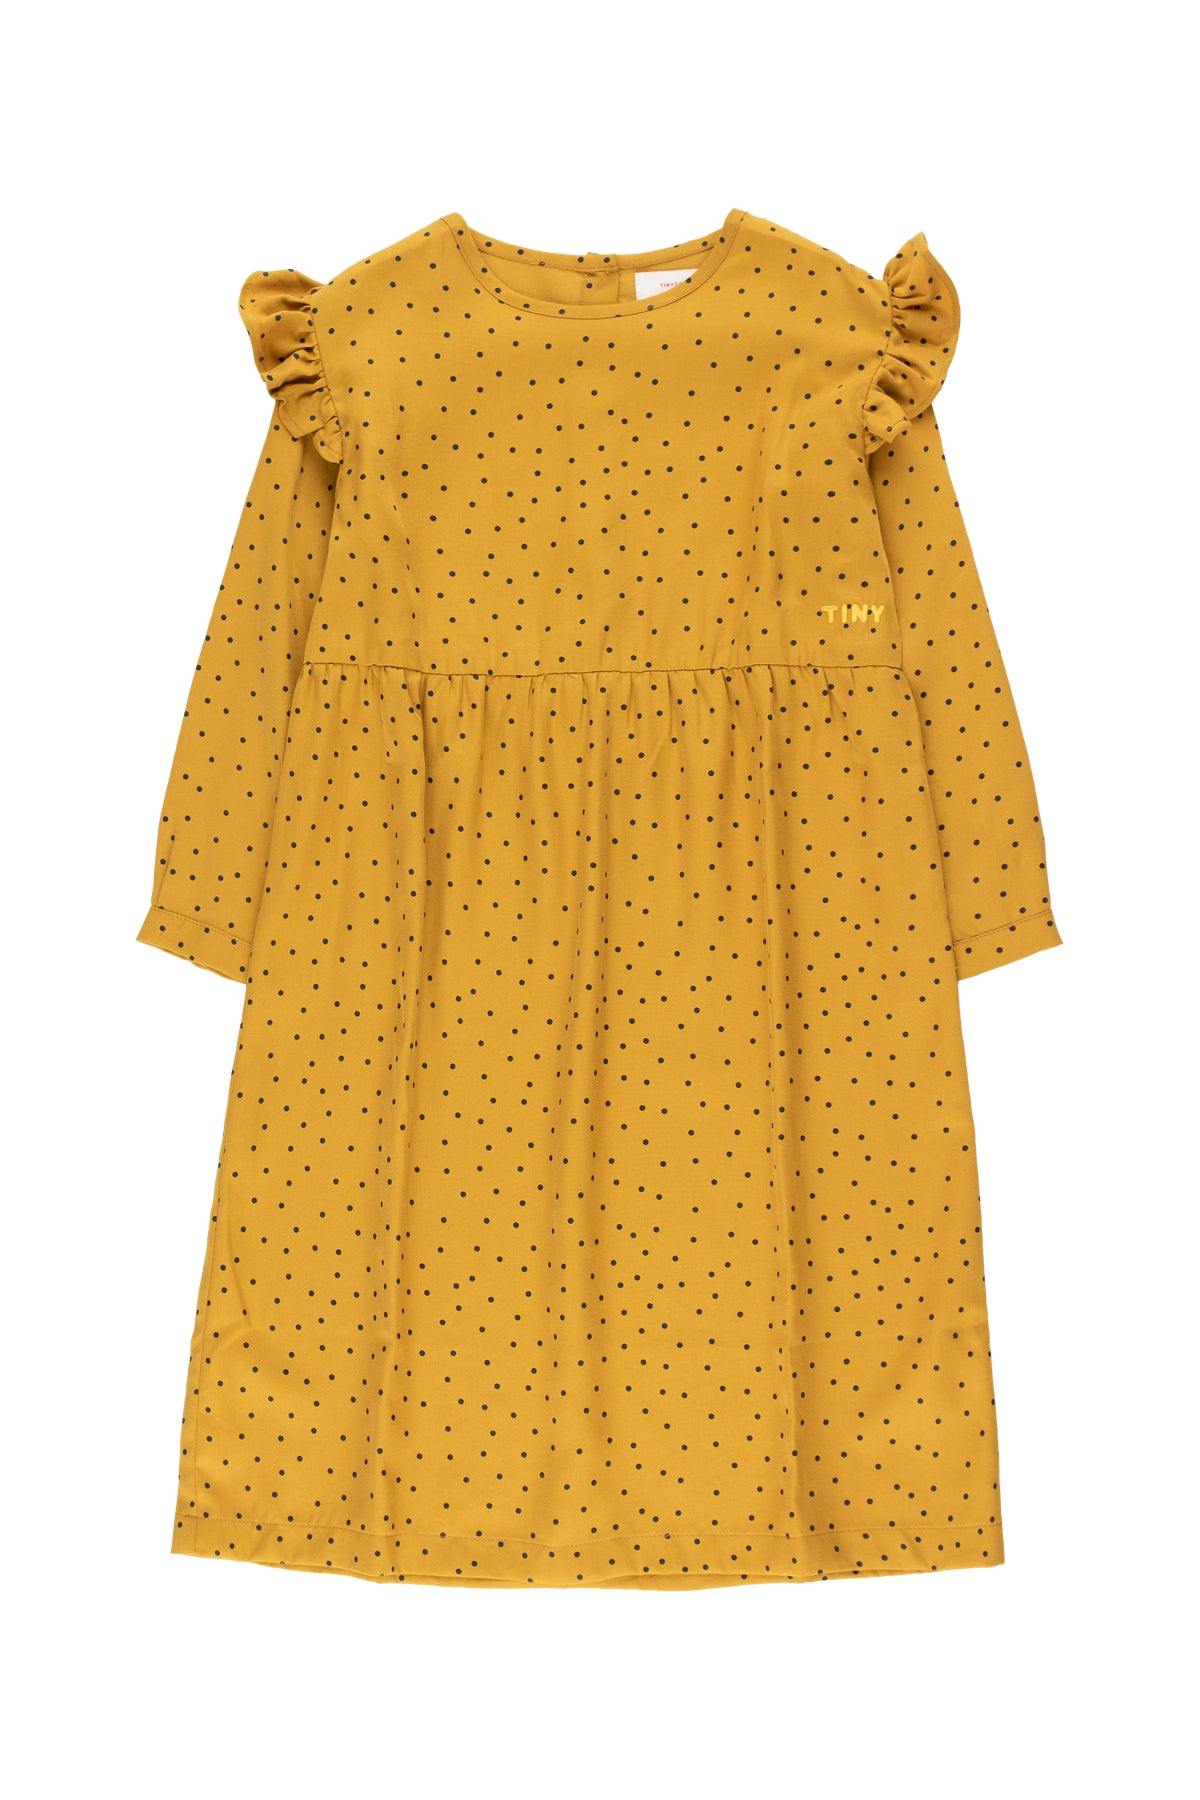 Girls Mustard Dots Dress